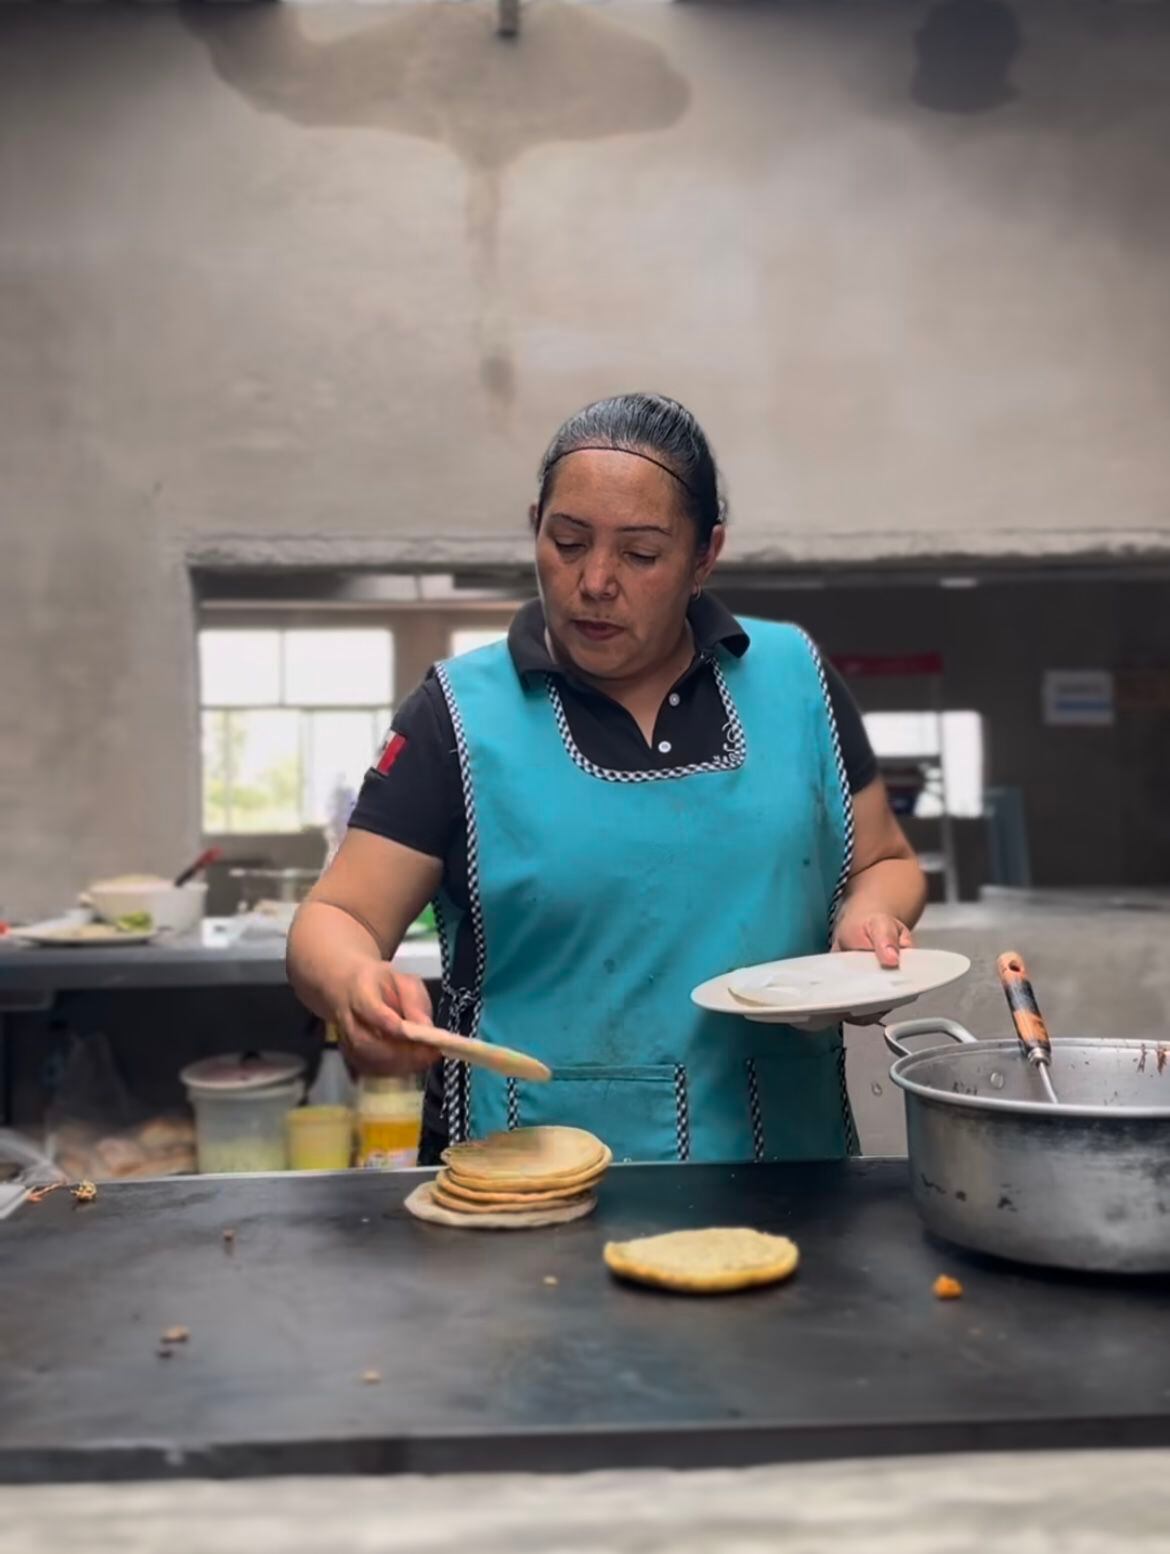 El establecimiento de Tacos Tere cuenta con una cocina abierta a los comensales. (Foto: Instagram / @adan_augusto)